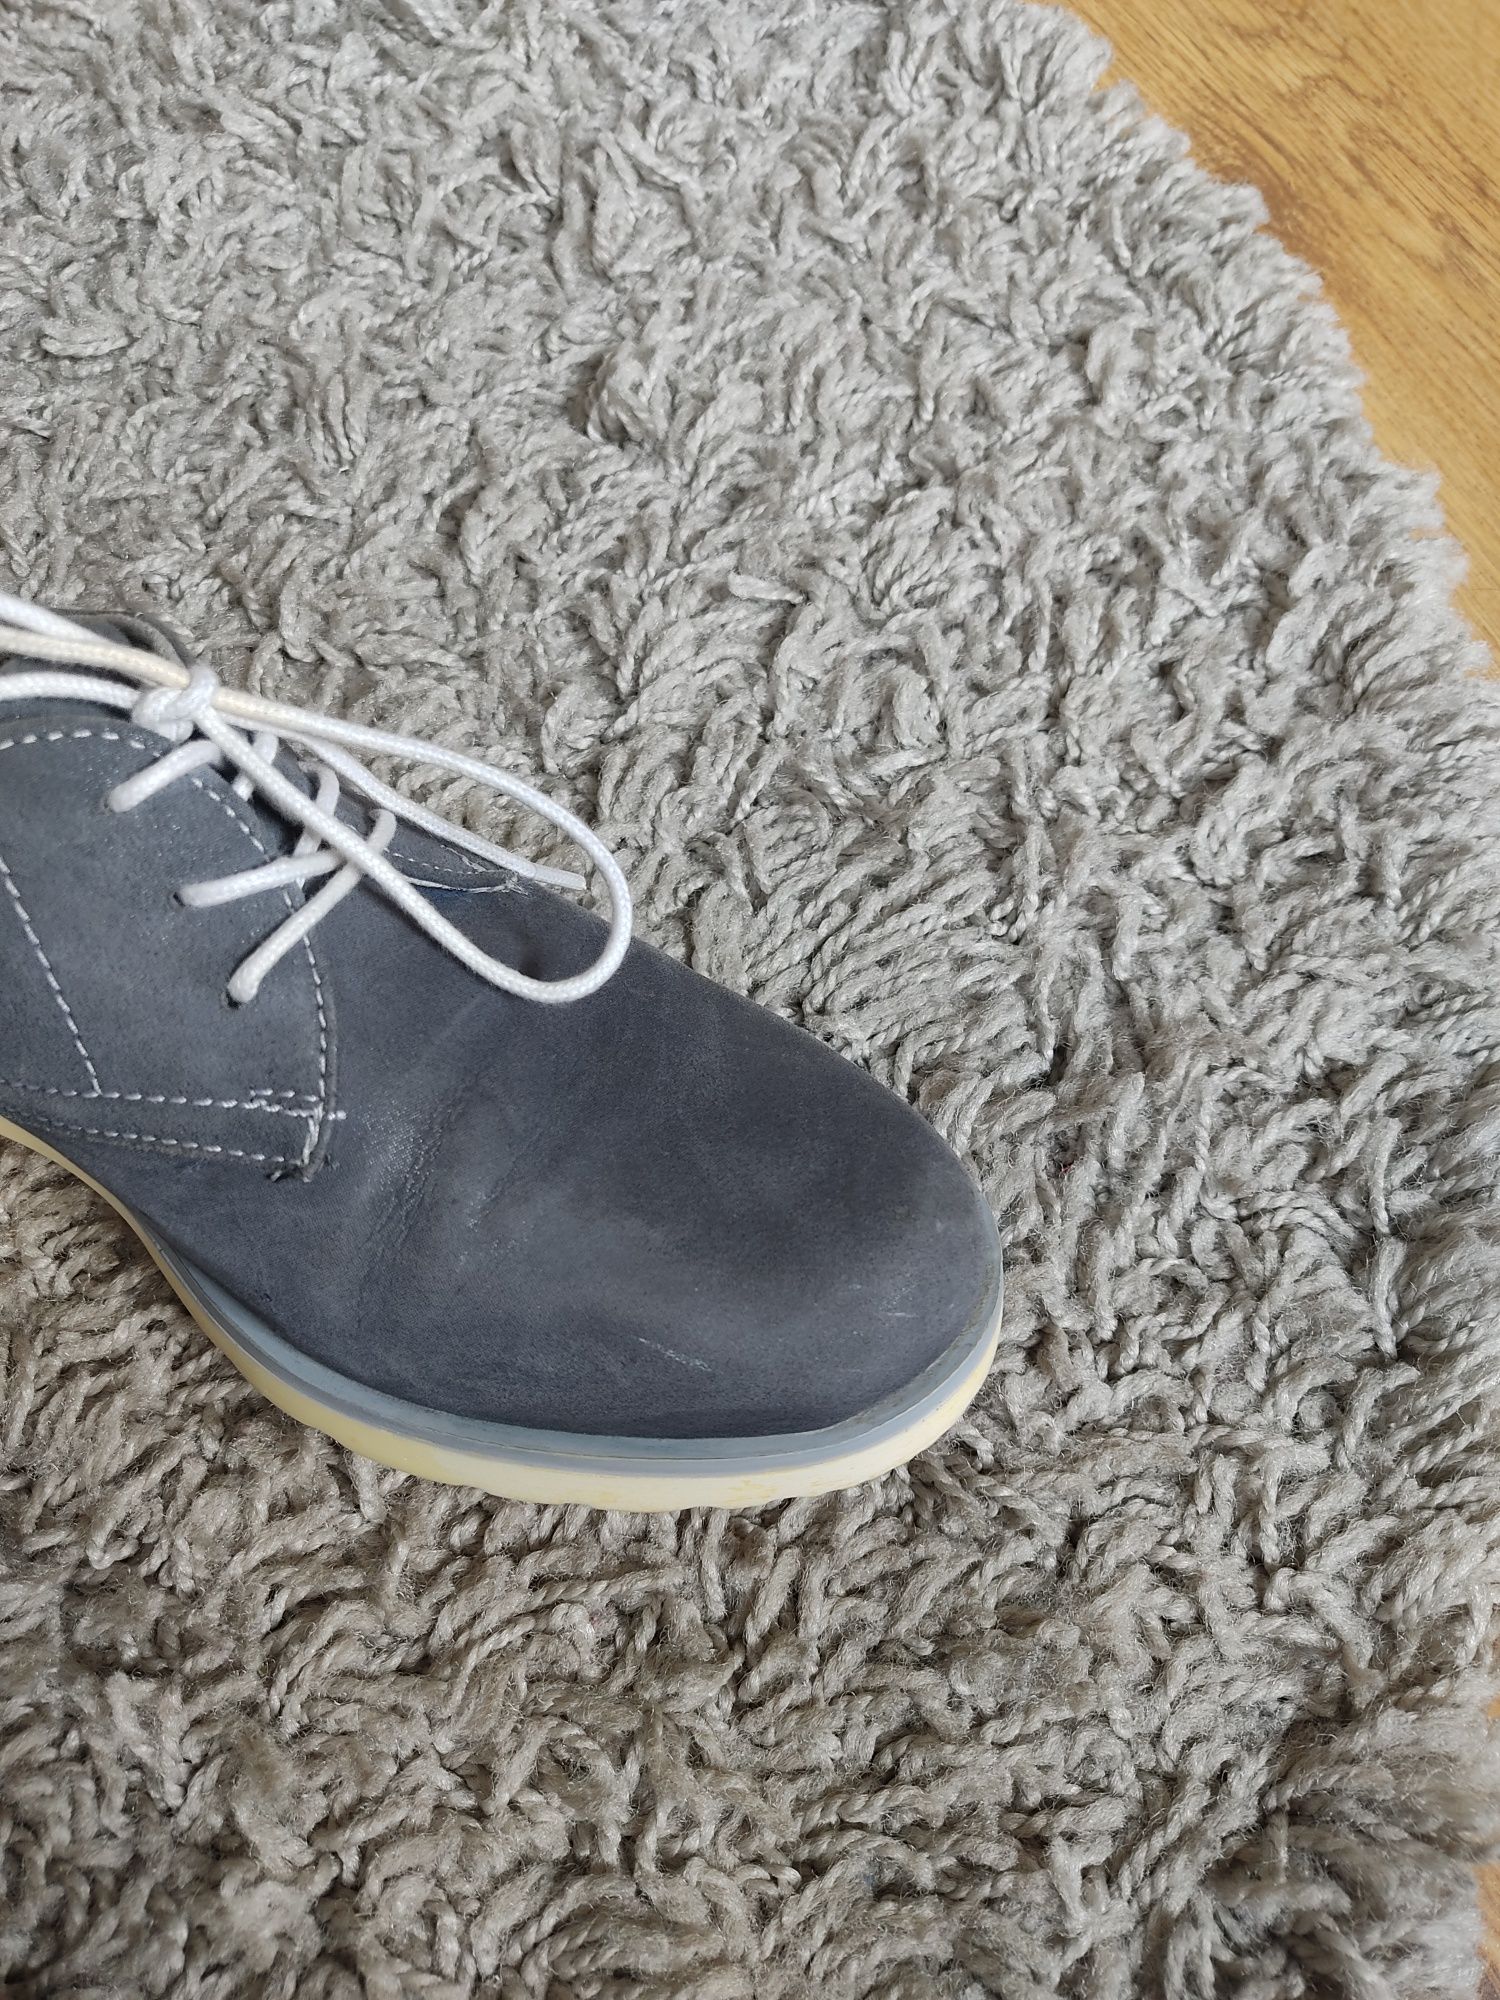 Niebieskie zamszowe skórzane buty z Lasockiego CCC 37 Oxfordy mokasyny